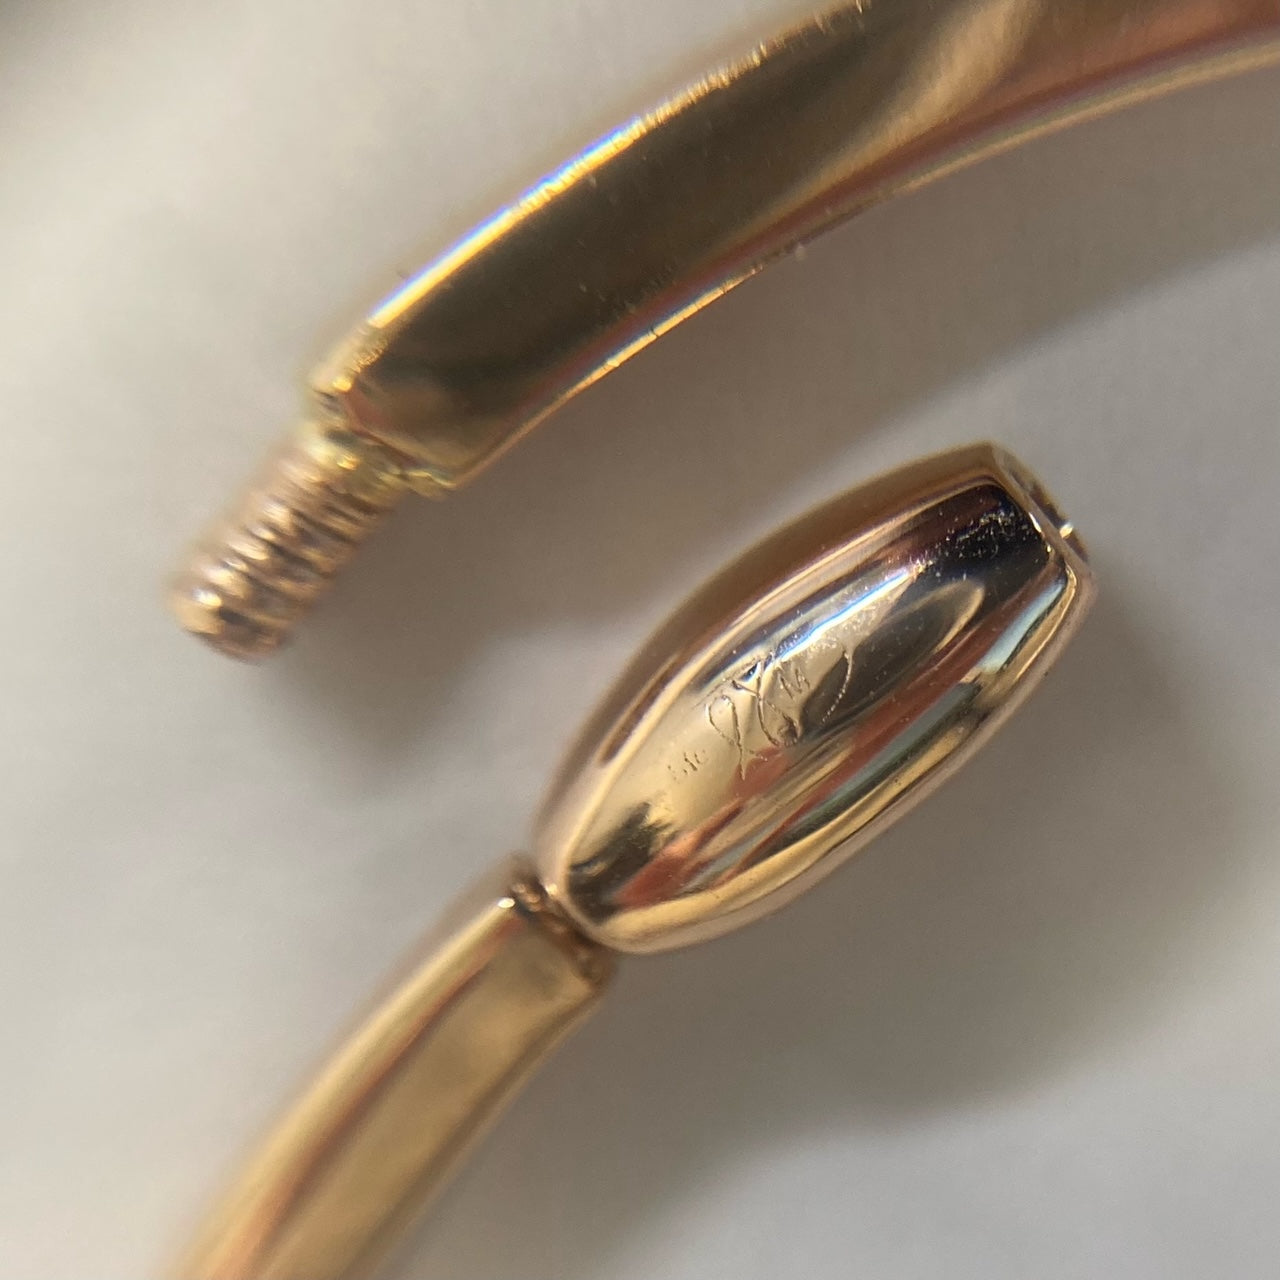 Bracelet en or rose 18 carats avec diamants